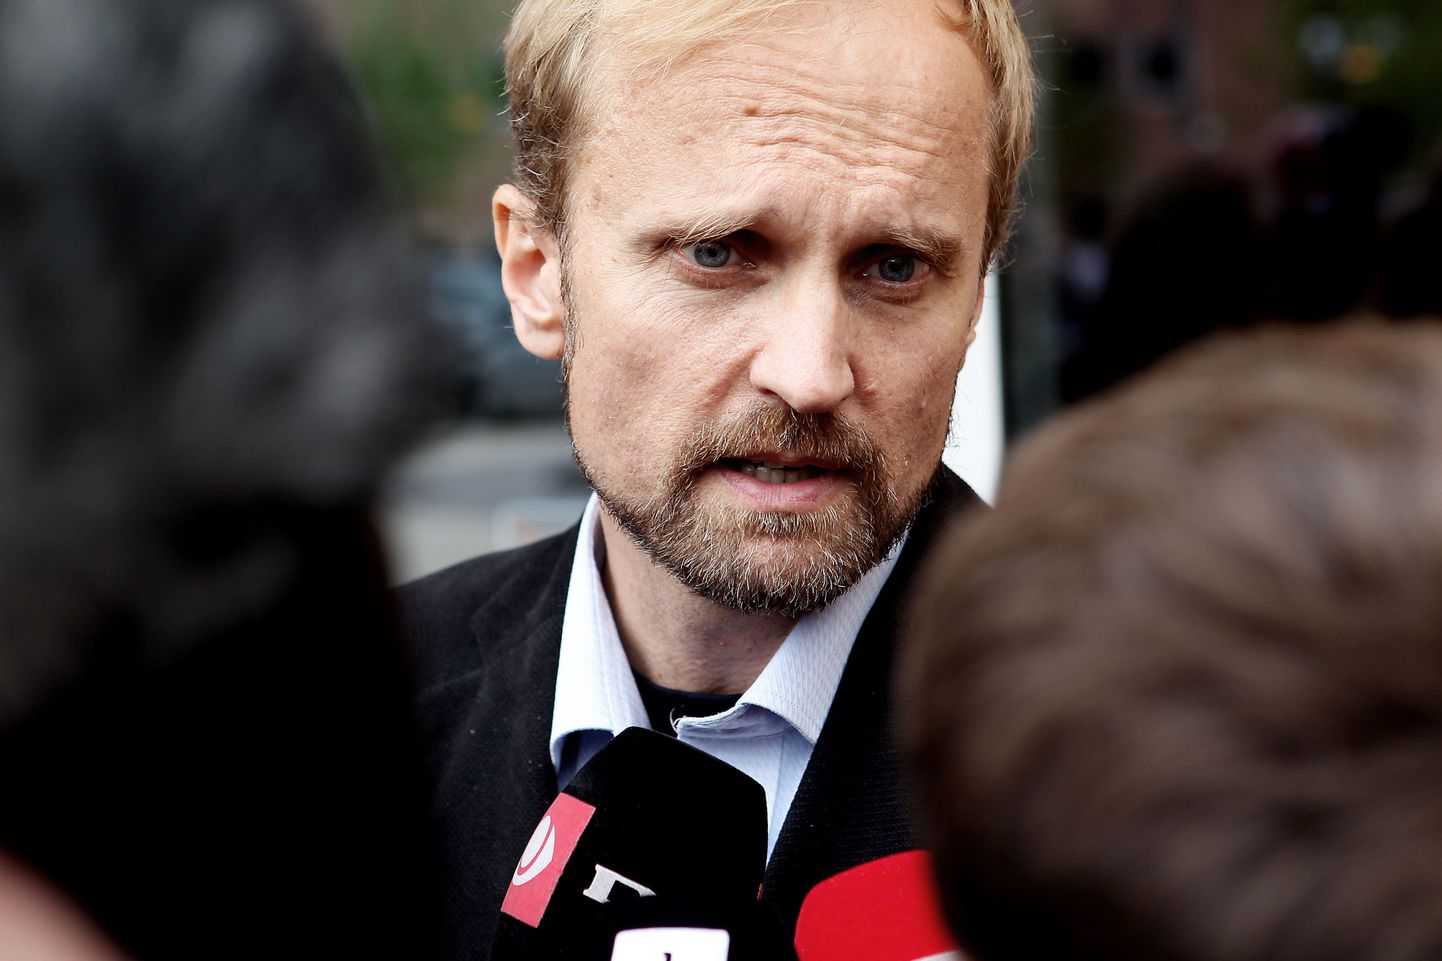 Soome professor Timo Kivimäki.